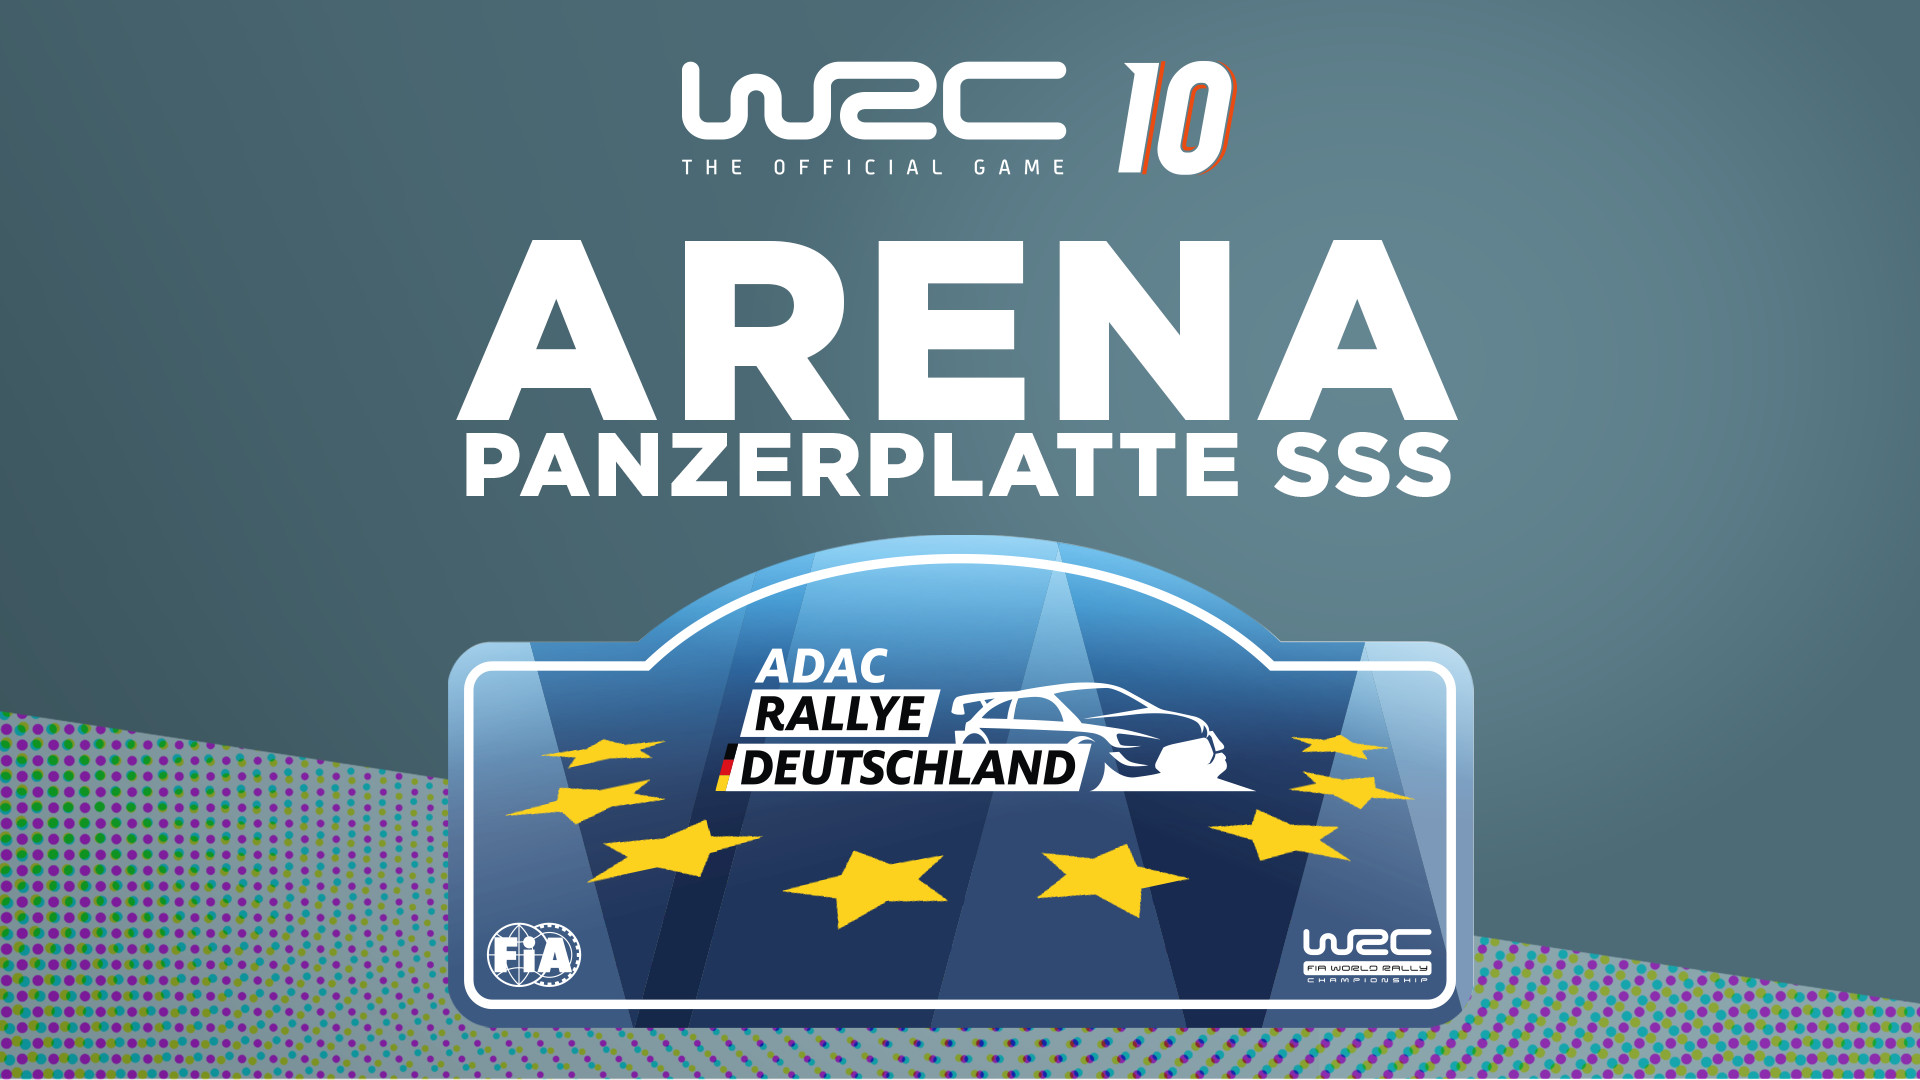 WRC 10 - Arena Panzerplatte SSS DLC Steam CD Key 4.51 $